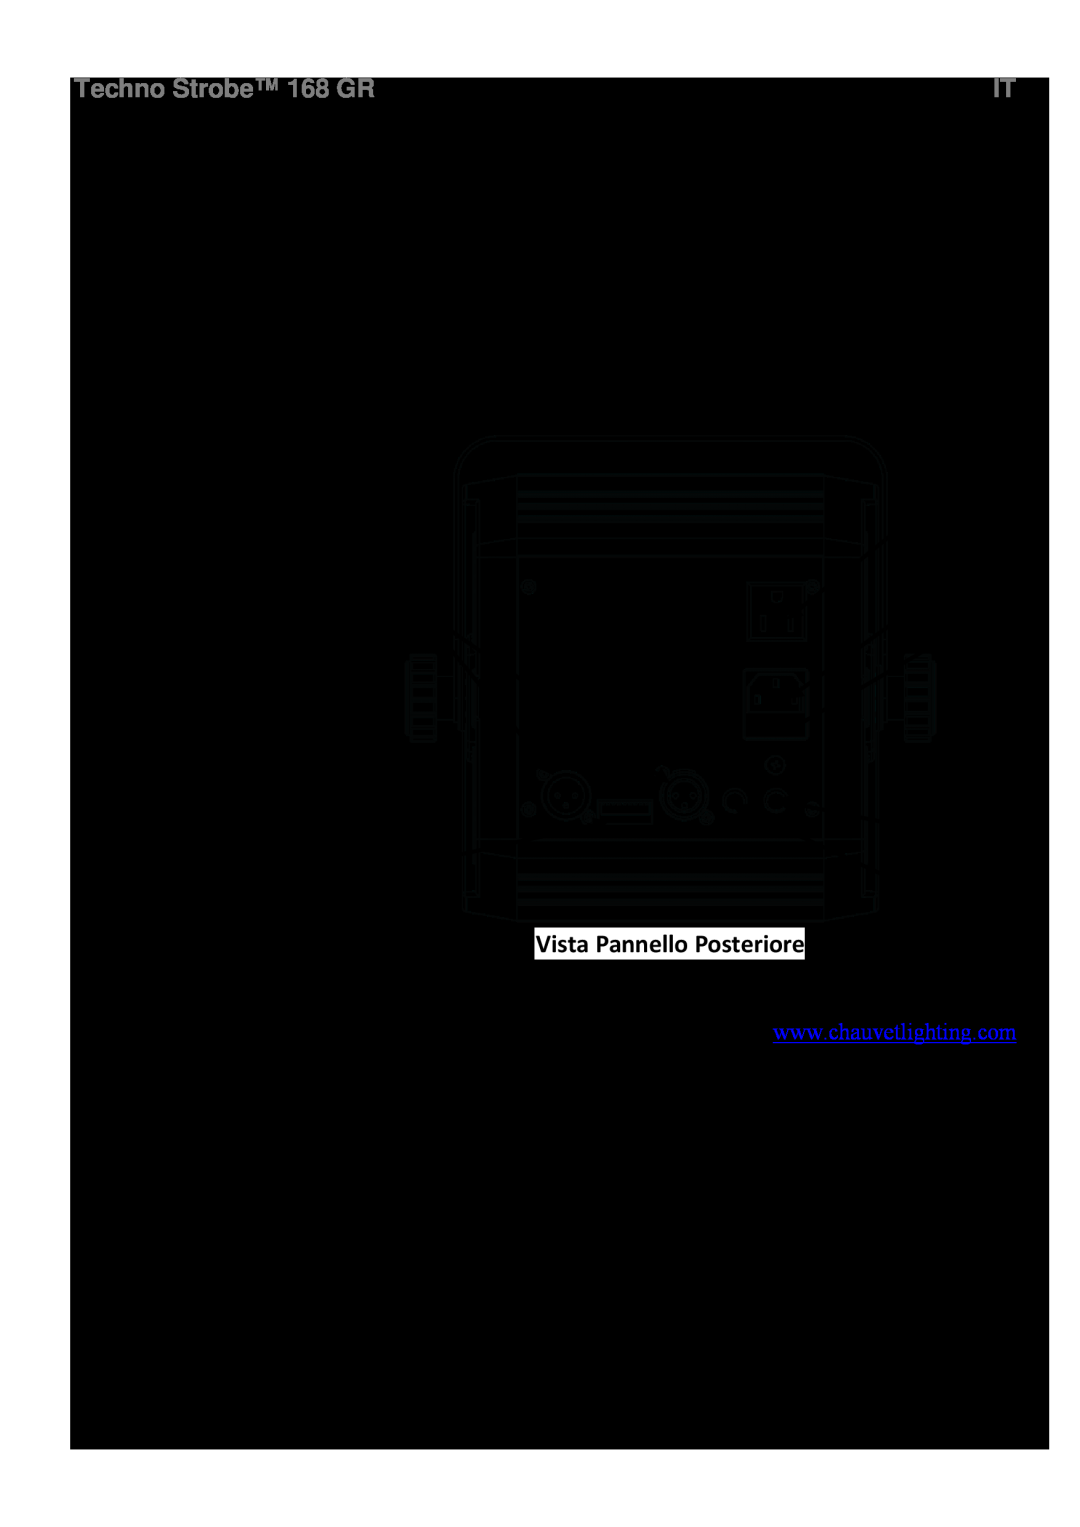 Chauvet 168 manual Che Cosa è, Incluso, Sostituzione Fusibile, Vista Pannello Posteriore, Informazioni Generali 